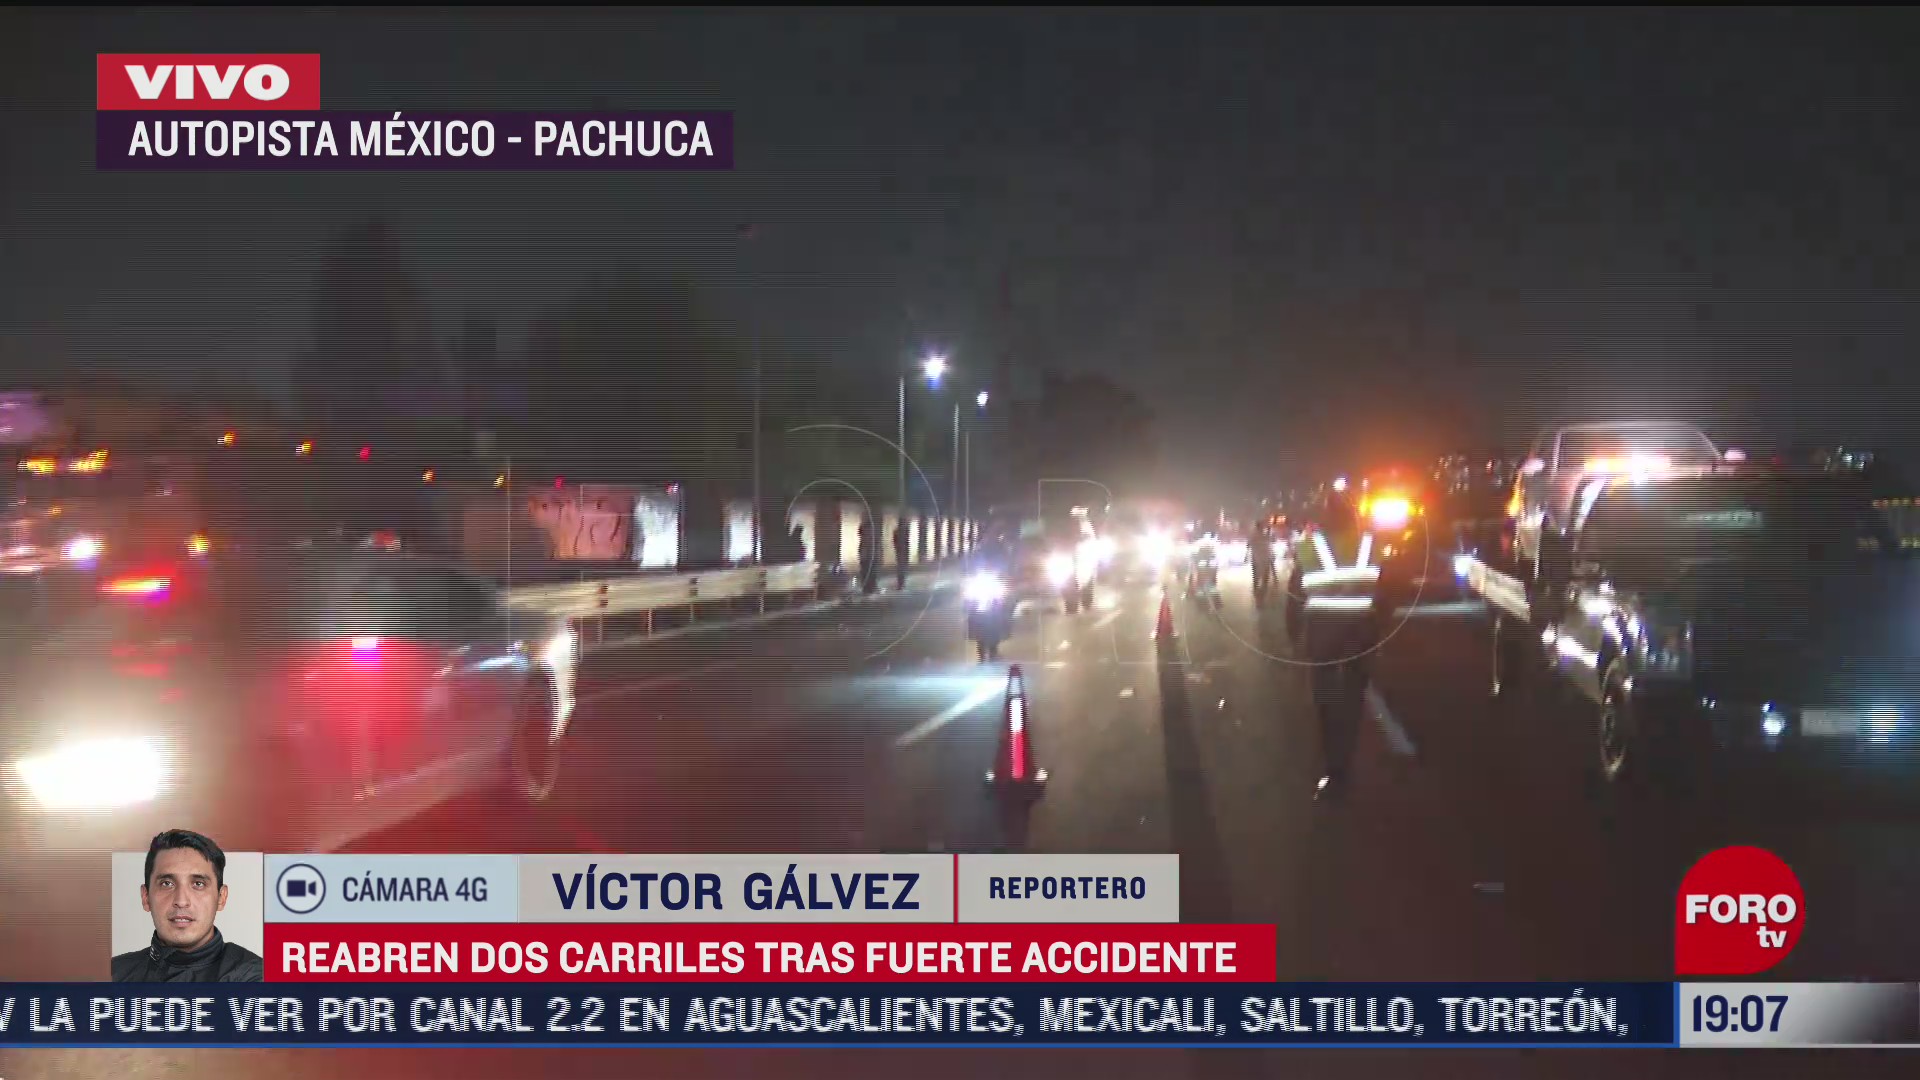 reabren dos carriles de autopista mexico pachuca tras accidente vial